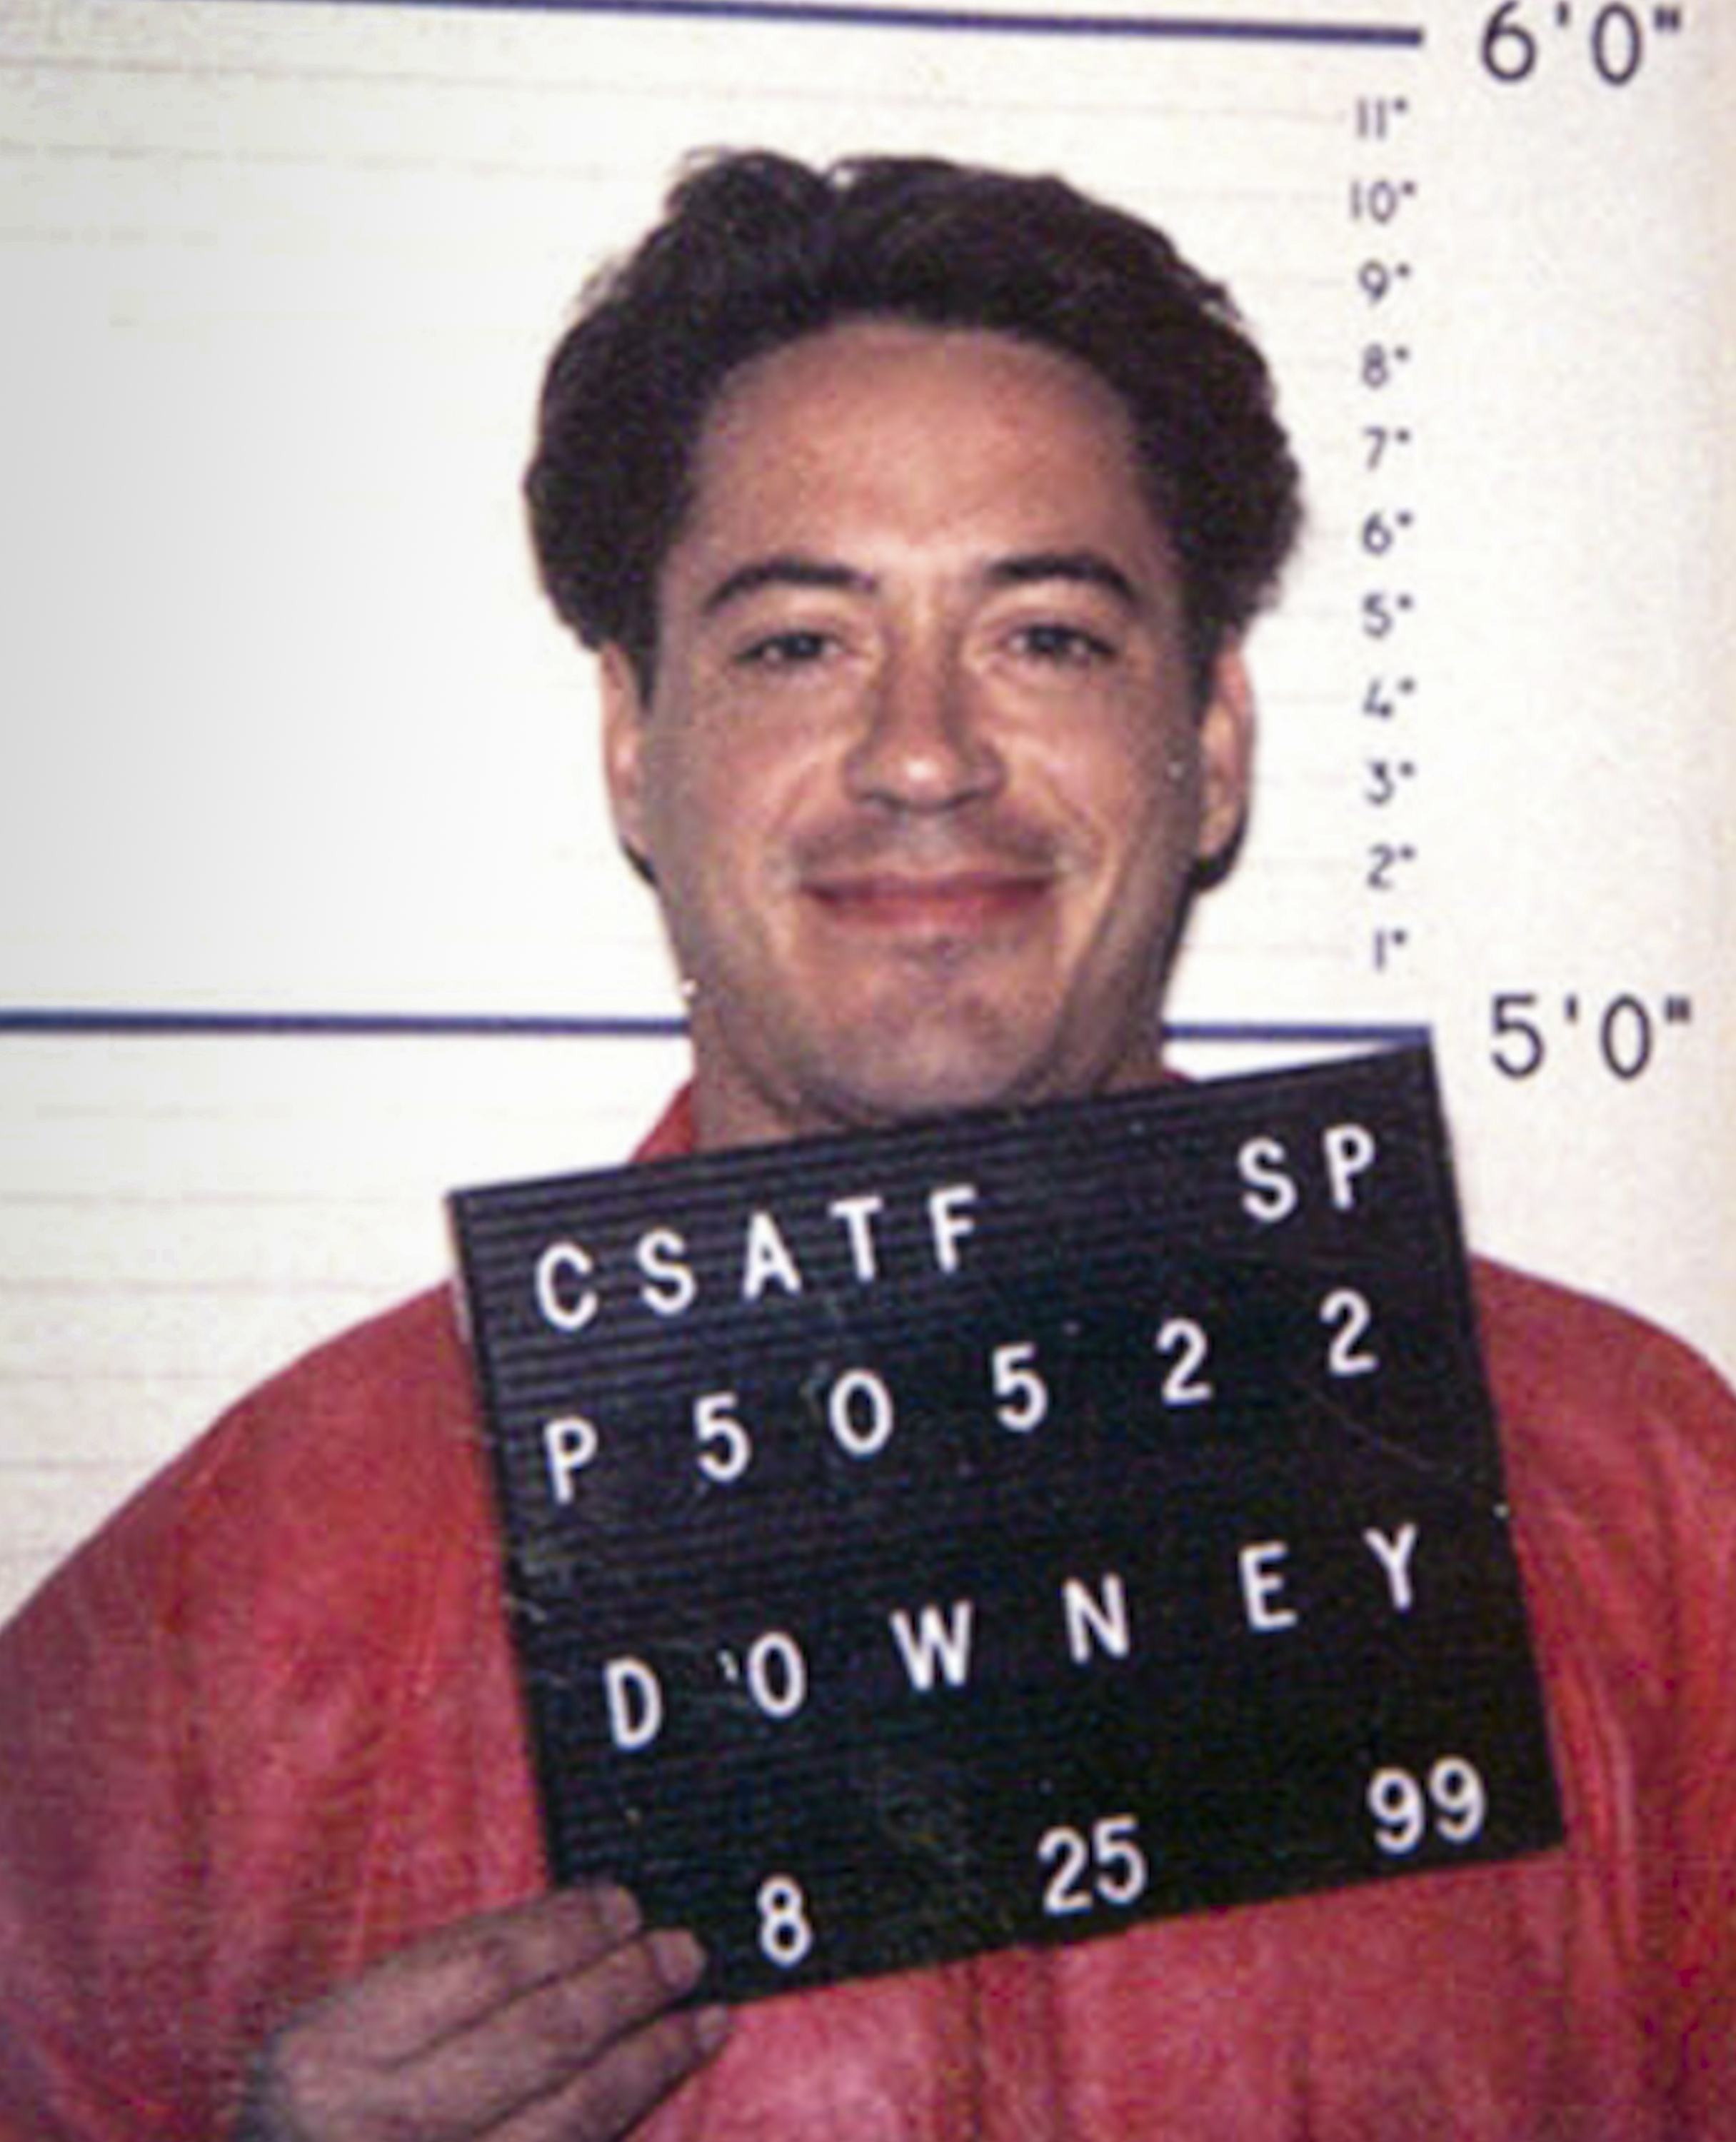 Robert Downey Jr. en Californie, le 25 septembre 1999. | Source : Getty Images